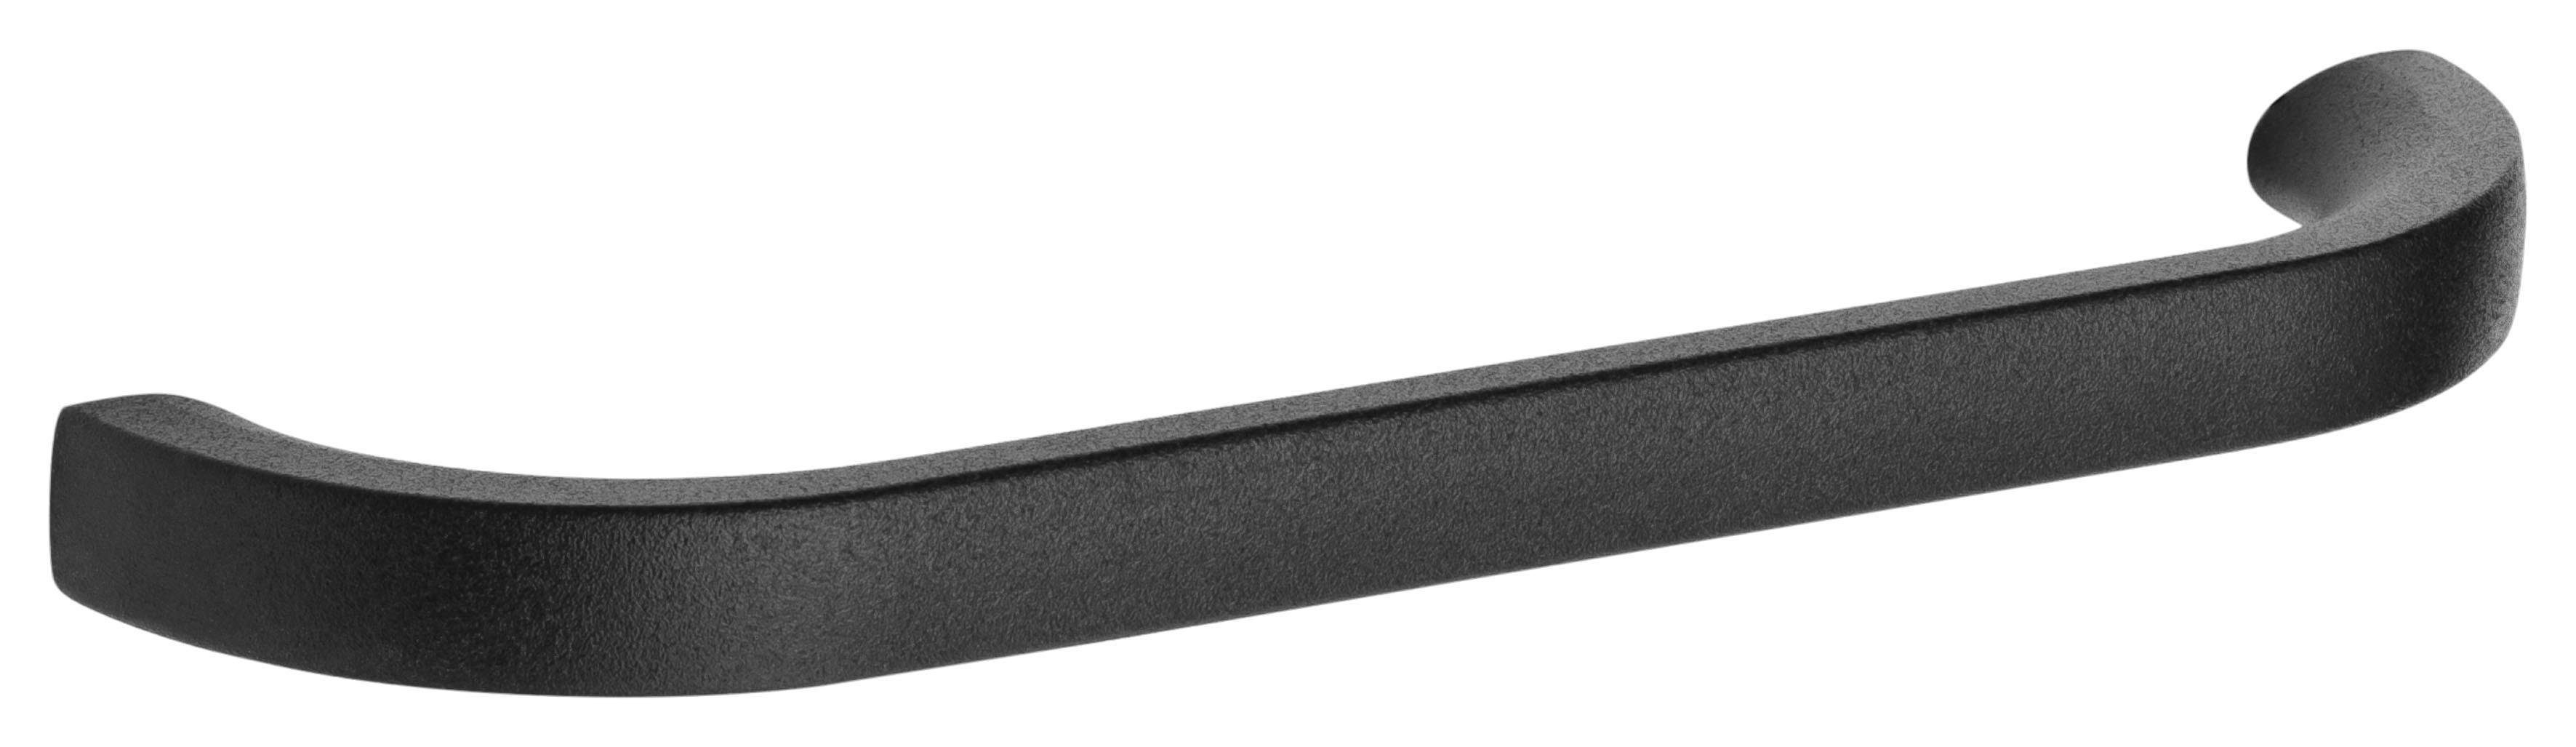 OPTIFIT Eckhängeschrank mit basaltgrau basaltgrau/basaltgrau cm und 60x60 Soft-Close-Funktion Elga | Metallgriff, Breite